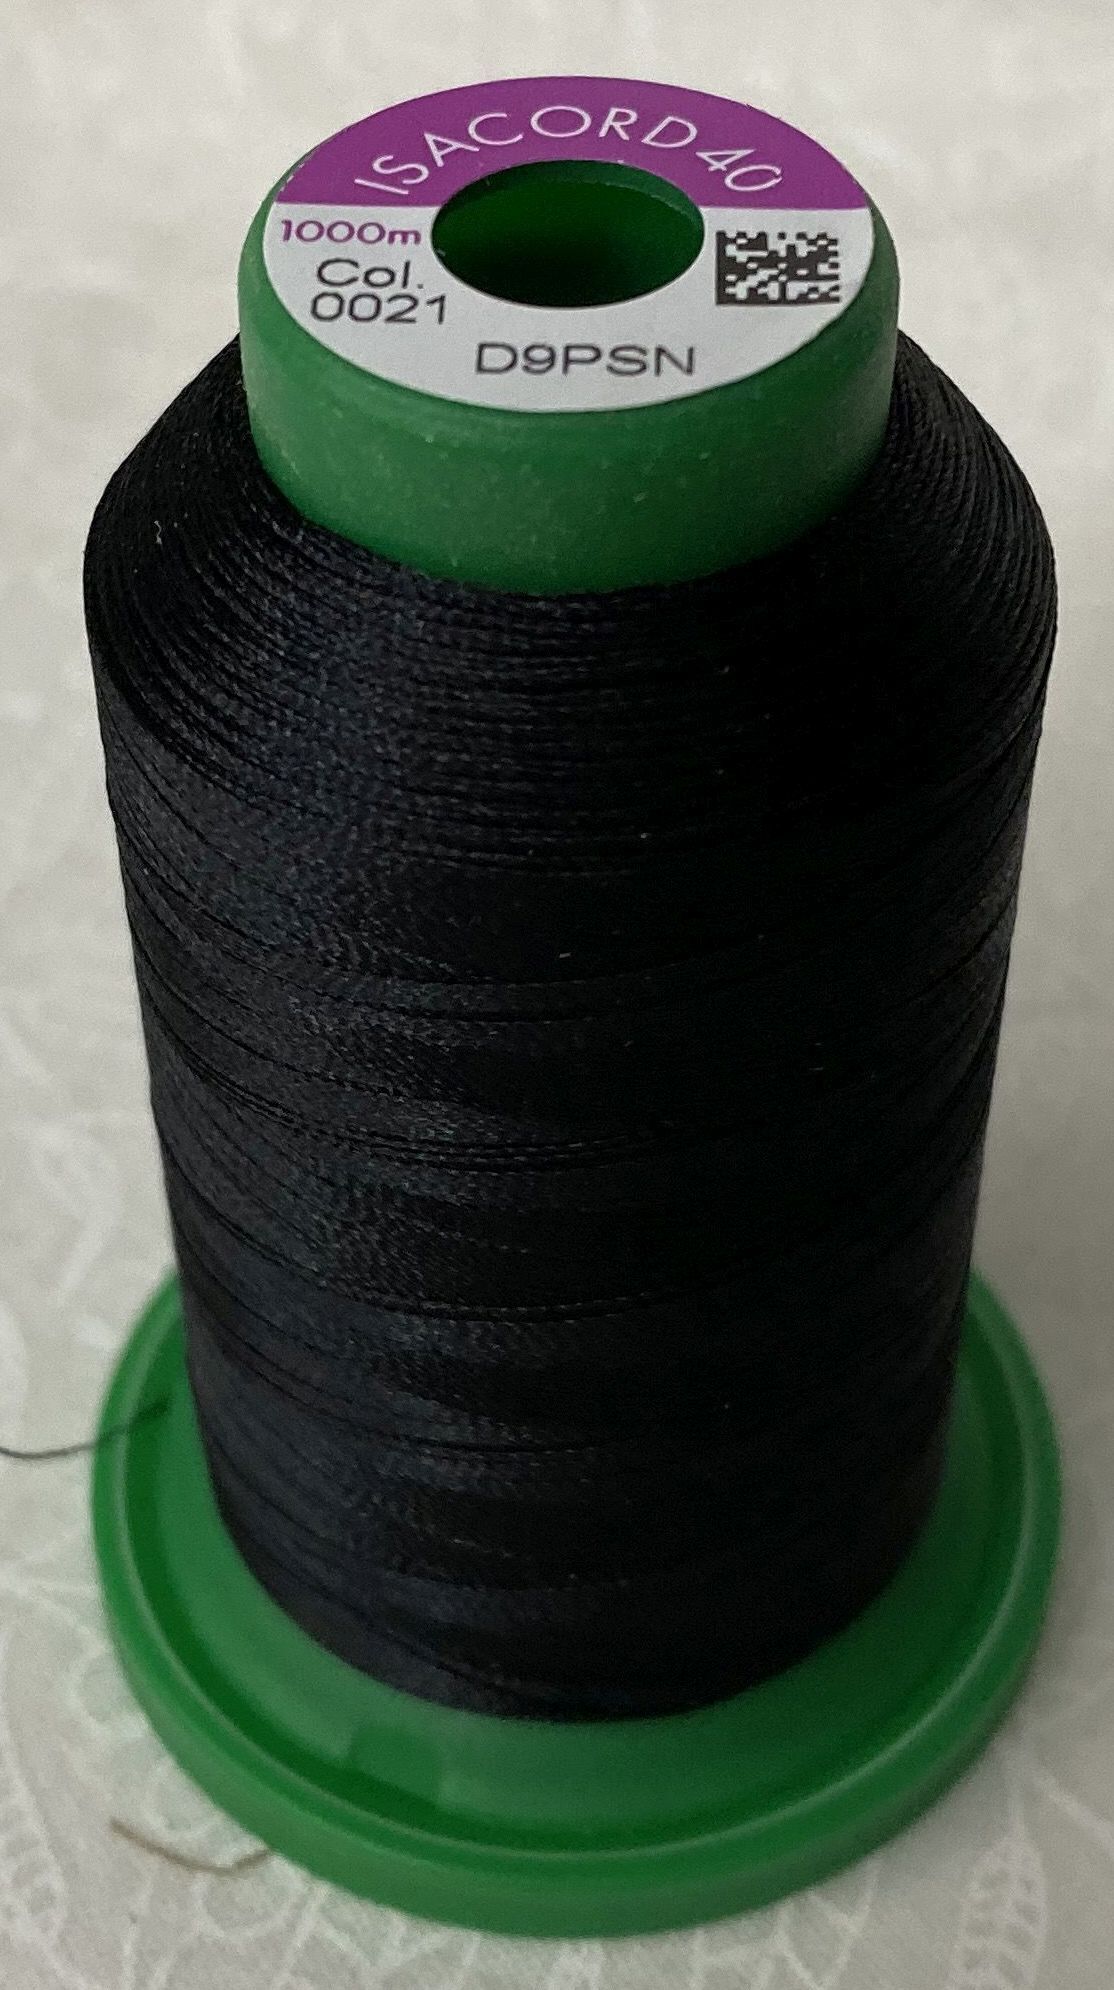 Câble électrique textile couleur NOIR torsadé lustres Fil vintage en tissu coloré Amarcords pour lampes appliques et abat-jours. soie 1 mètre à 2 brins 2x0,75 